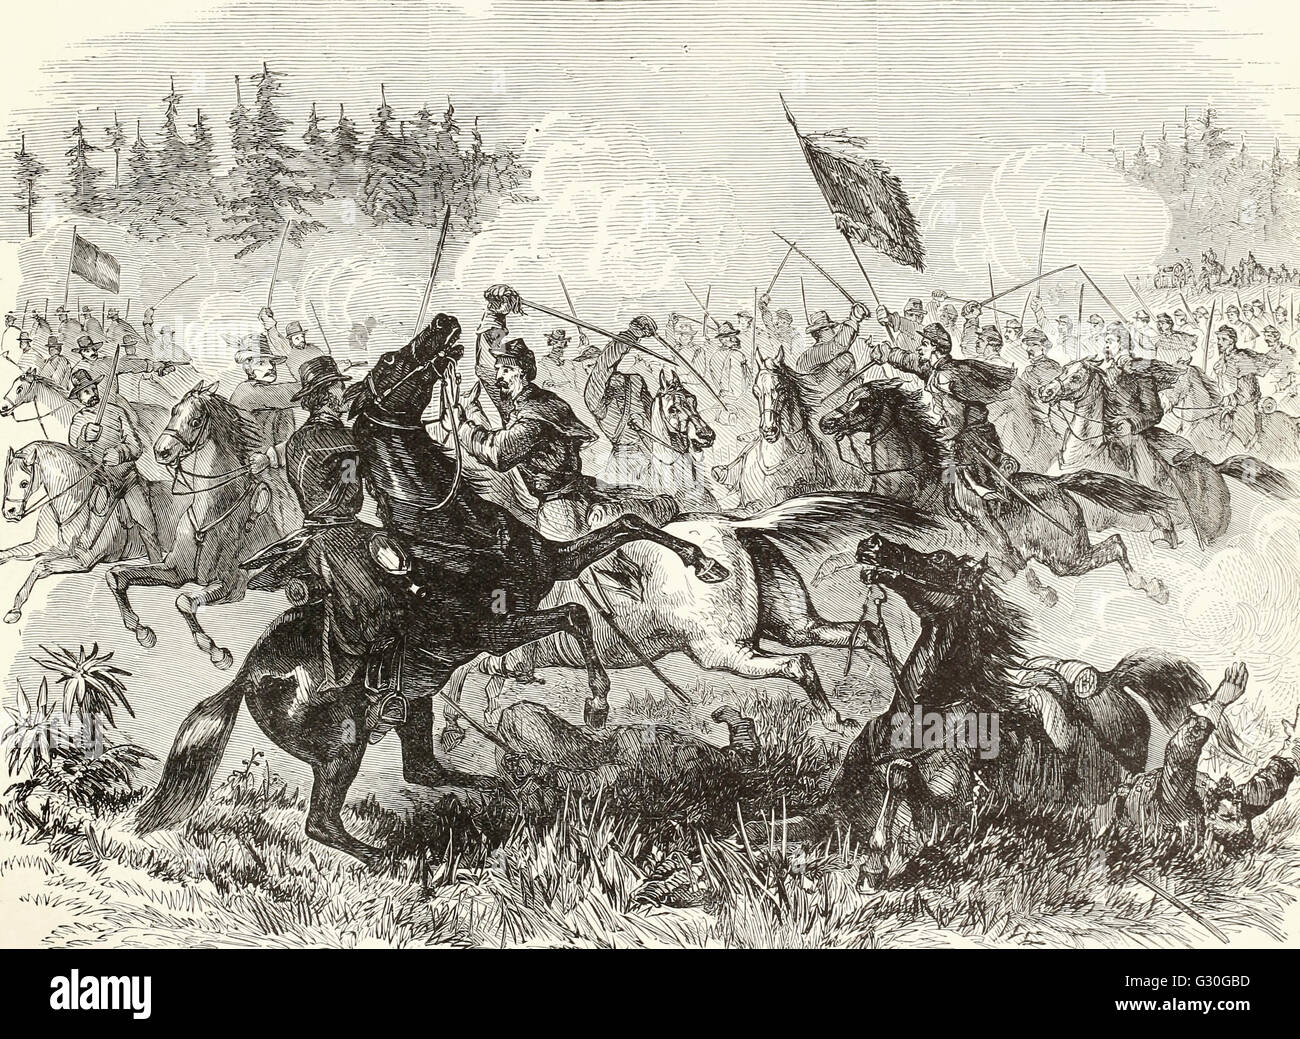 Verzweifelte hand zu hand Kampf zwischen Bundesrepublik Kavallerie unter dem Kommando von General Averill und Stuarts konföderierten Truppen bei Kelleys Ford auf den Rappahannock, Virginia. 17. März 1863. USA Bürgerkrieg Stockfoto